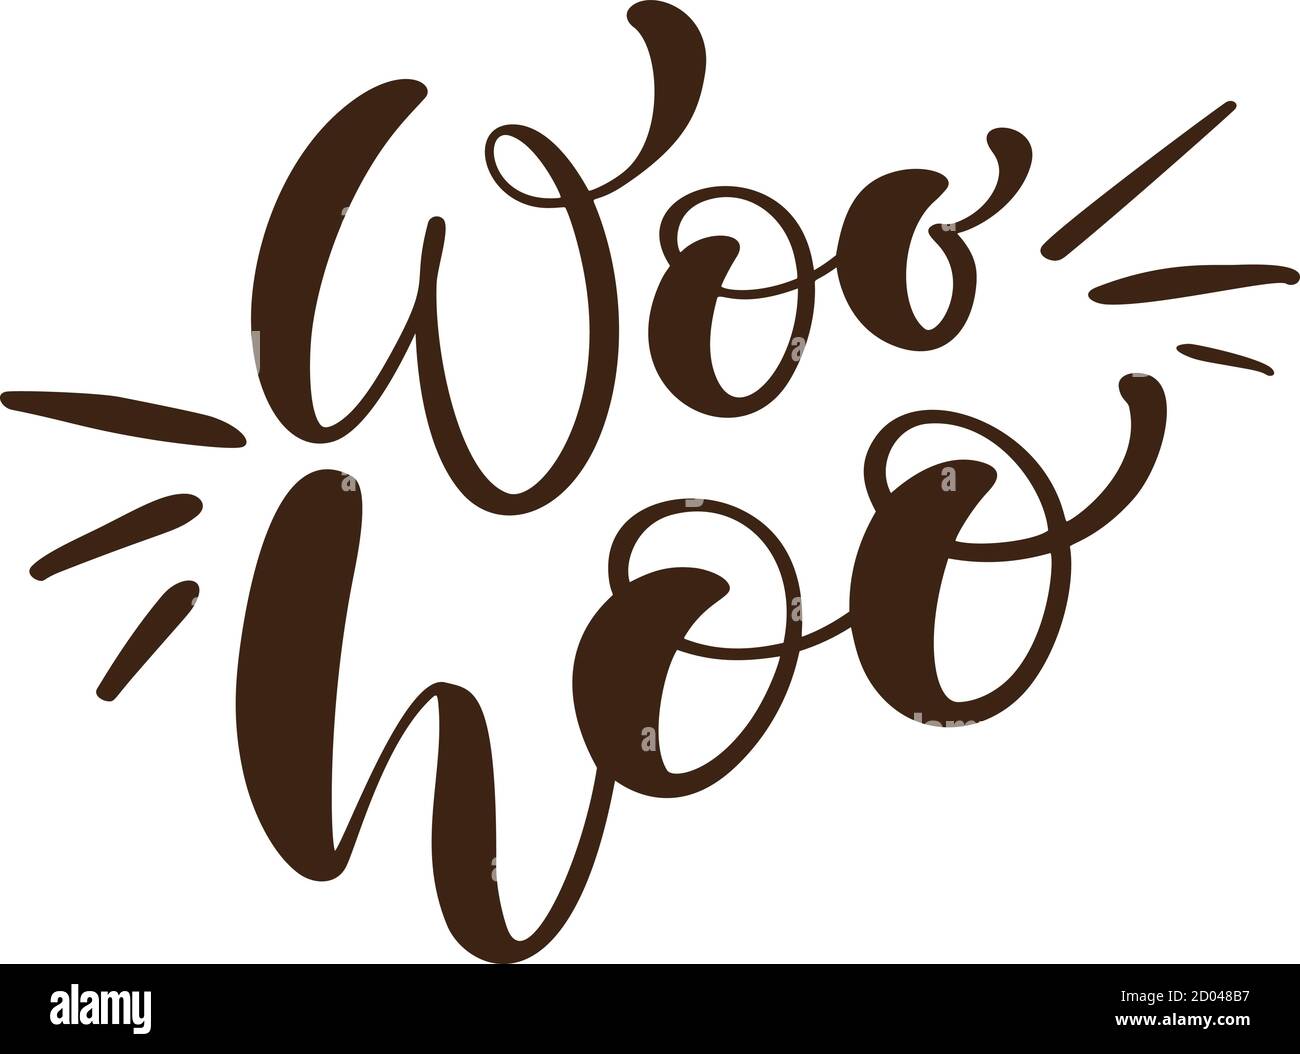 Woo Hoo Vektor Hand gezeichnet Schriftzug positive Zitat. Kalligraphie inspirierender und motivierender Slogan für Karte, Banner, Poster Stock Vektor